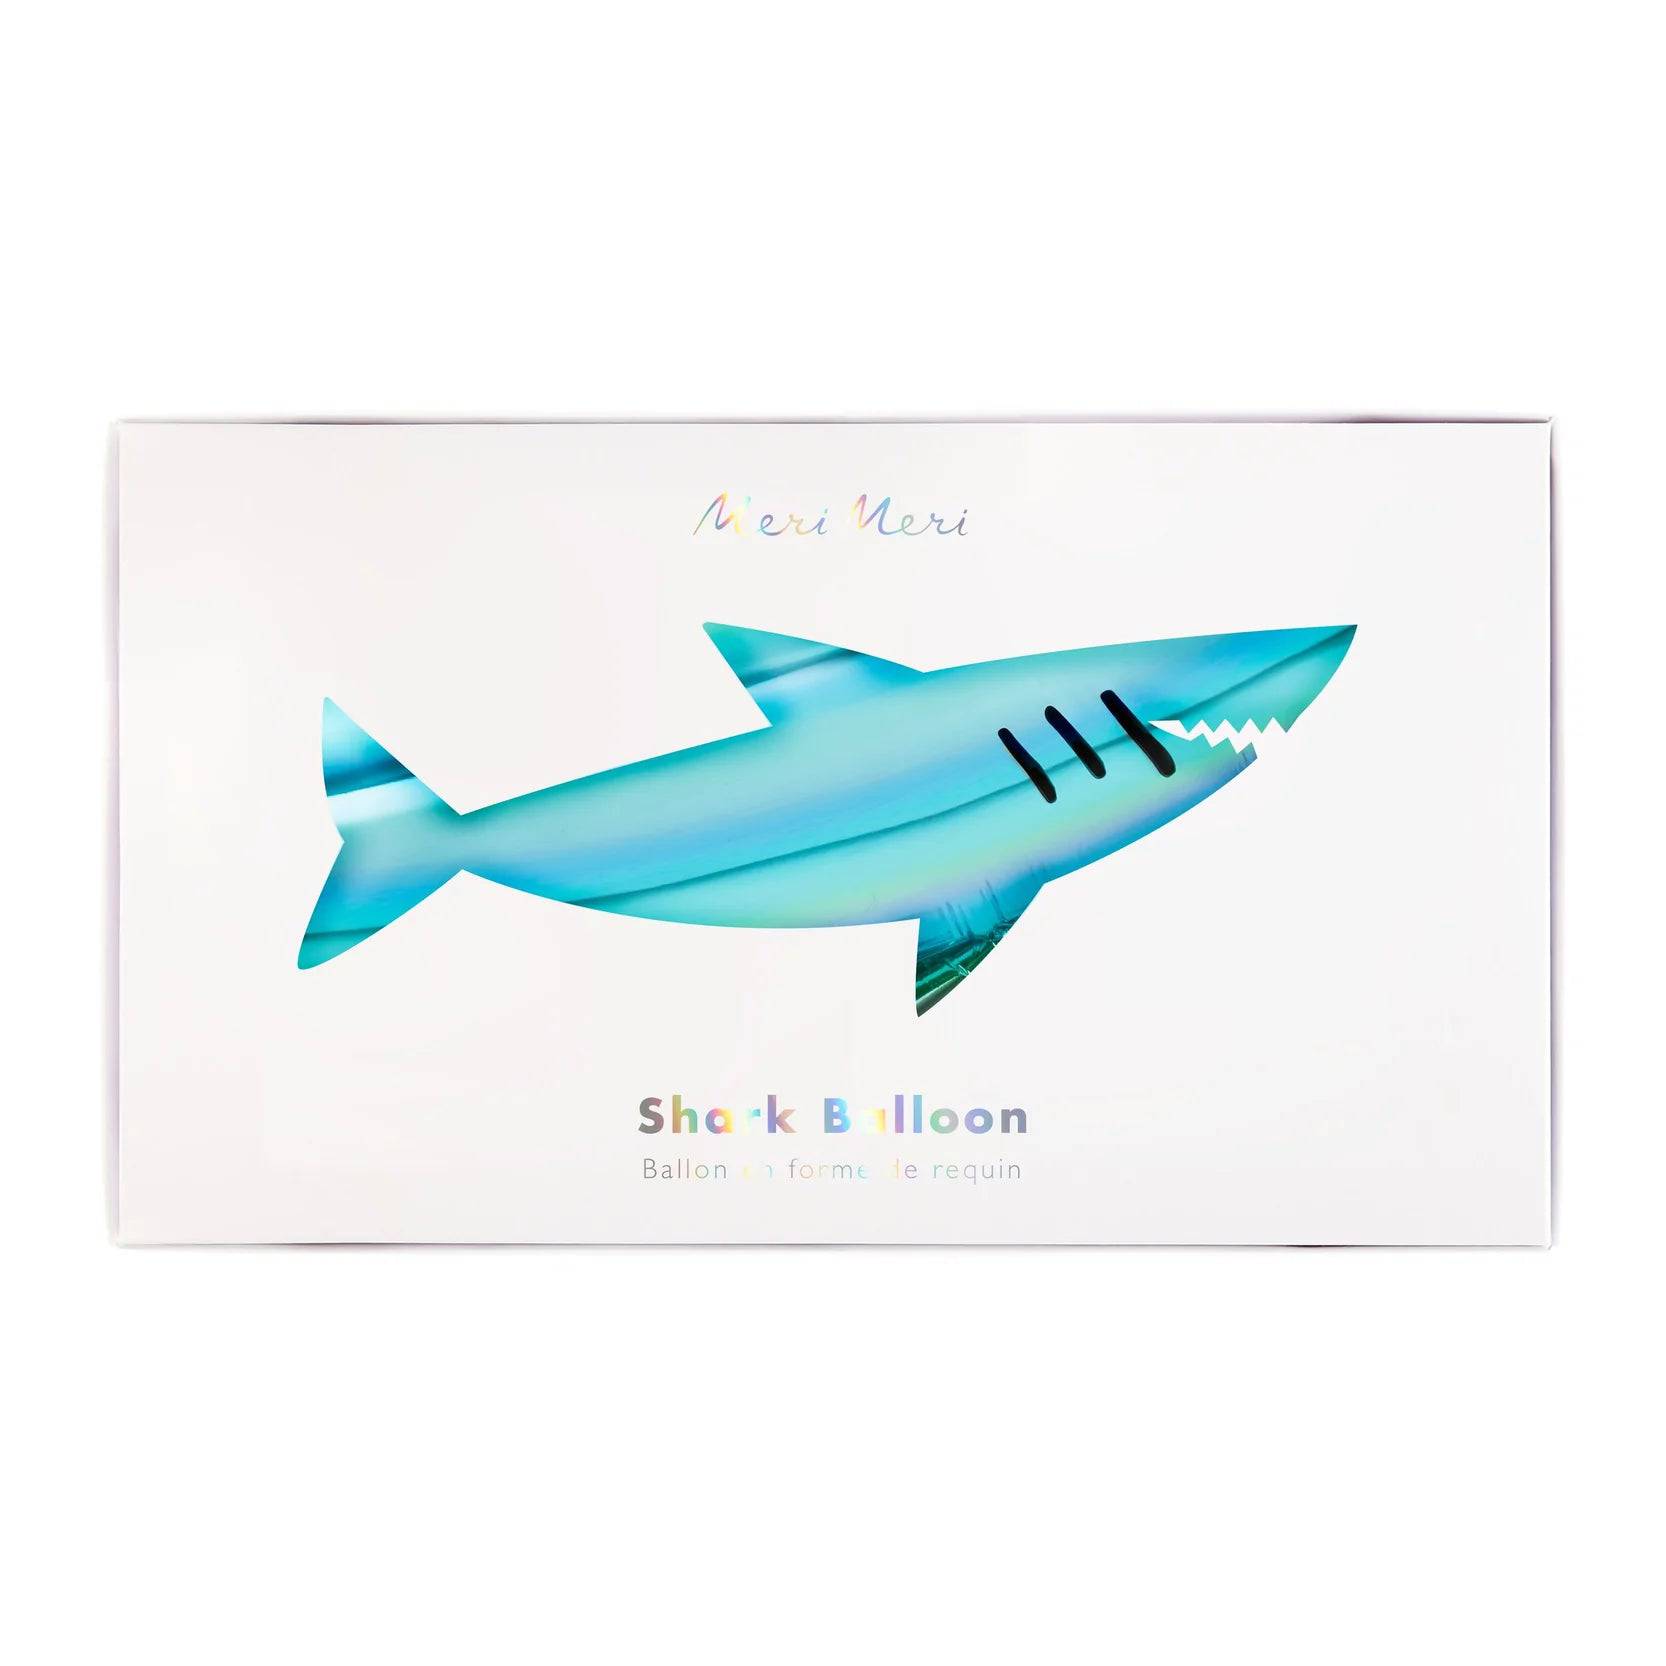 Shark balloon Unter Wasser Meri Meri - Der Backmichgluecklich Online Shop